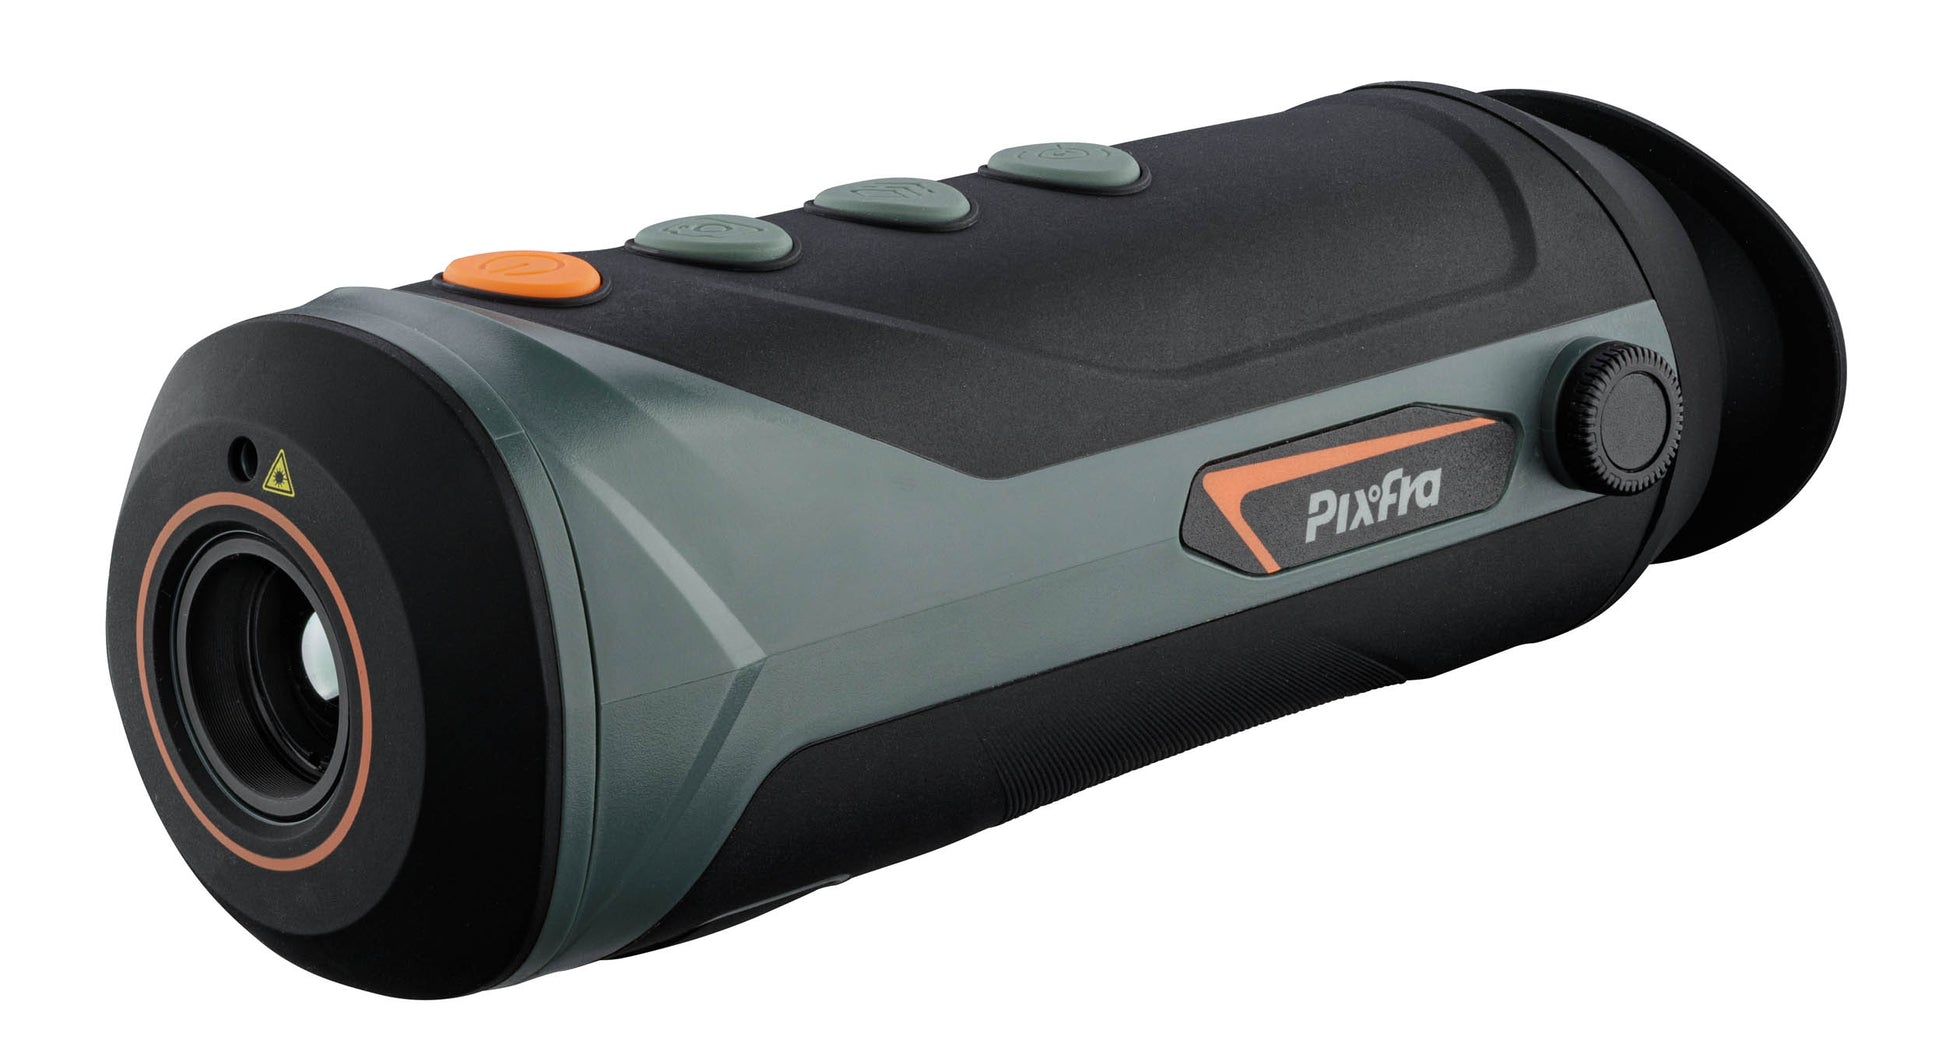 Monoculaire de vision thermique Pixfra M20-T.A DEFENSE